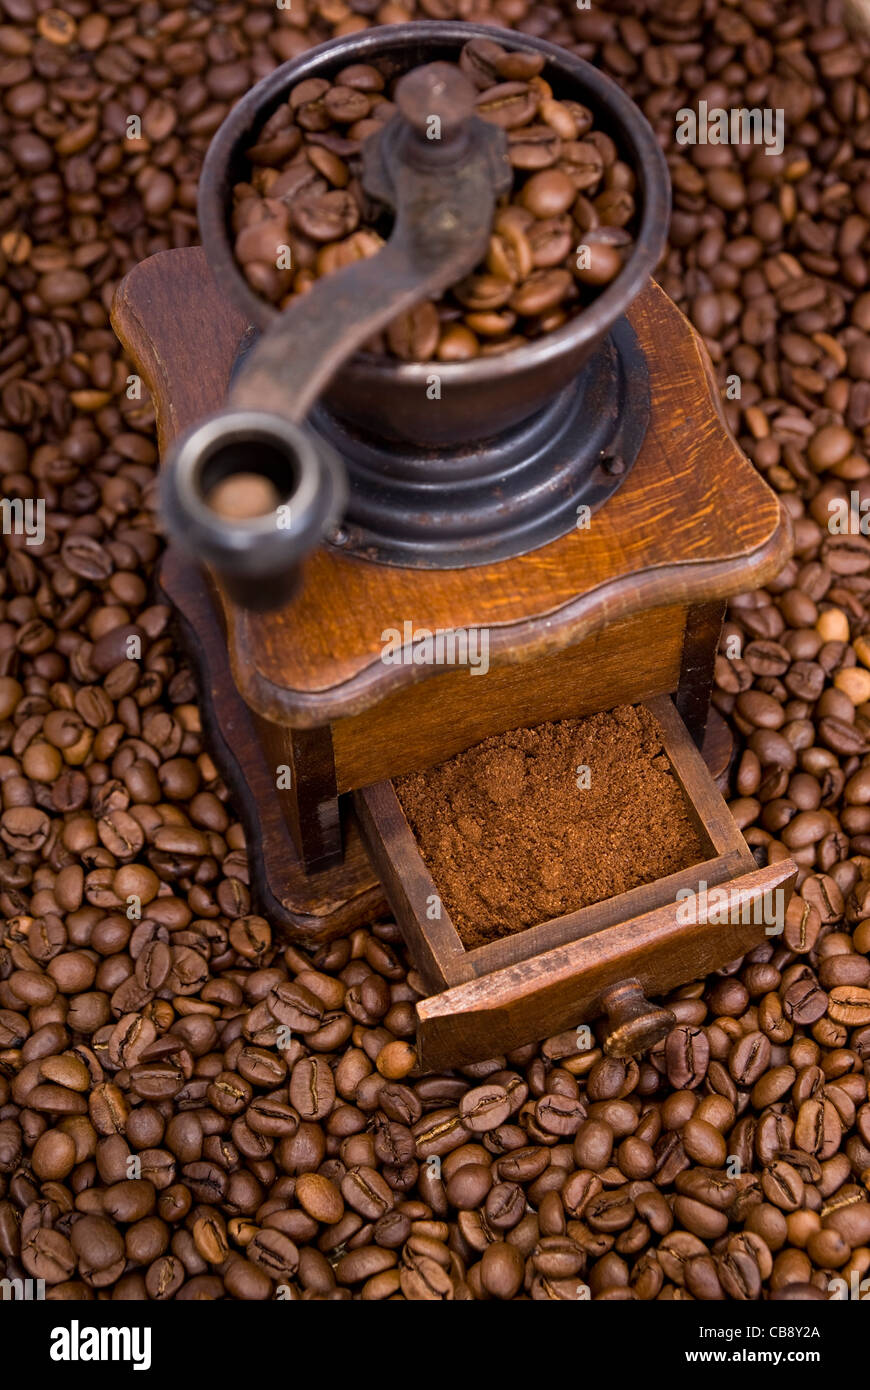 Molinillo para moler café en granos de café Fotografía de stock - Alamy